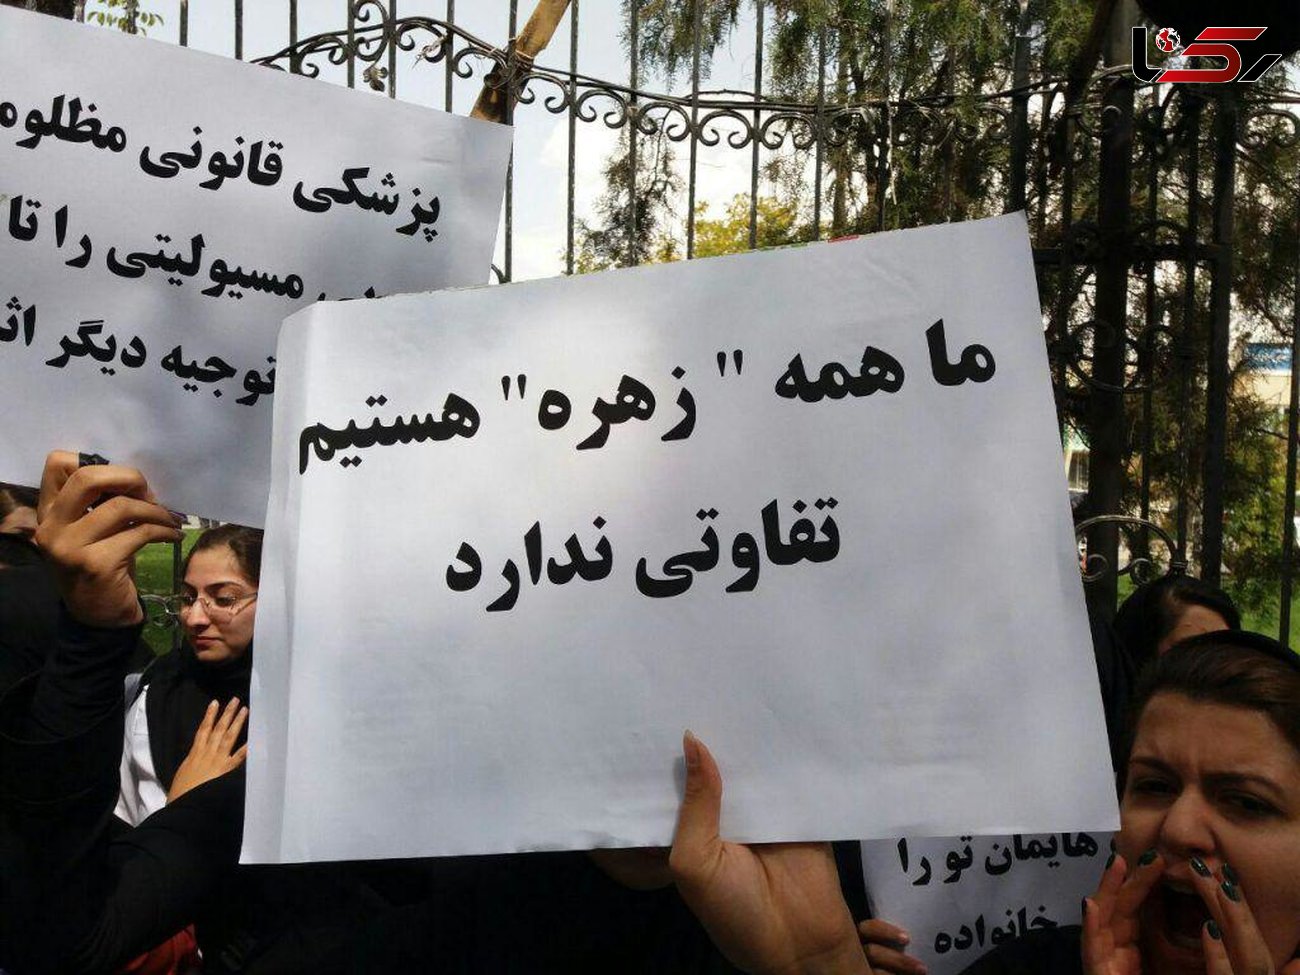 اعتراض در پی مرگ تلخ دختر دانشجوی پزشکی شهرکرد ادامه دارد / ما همه زهره هستیم!!! + عکس